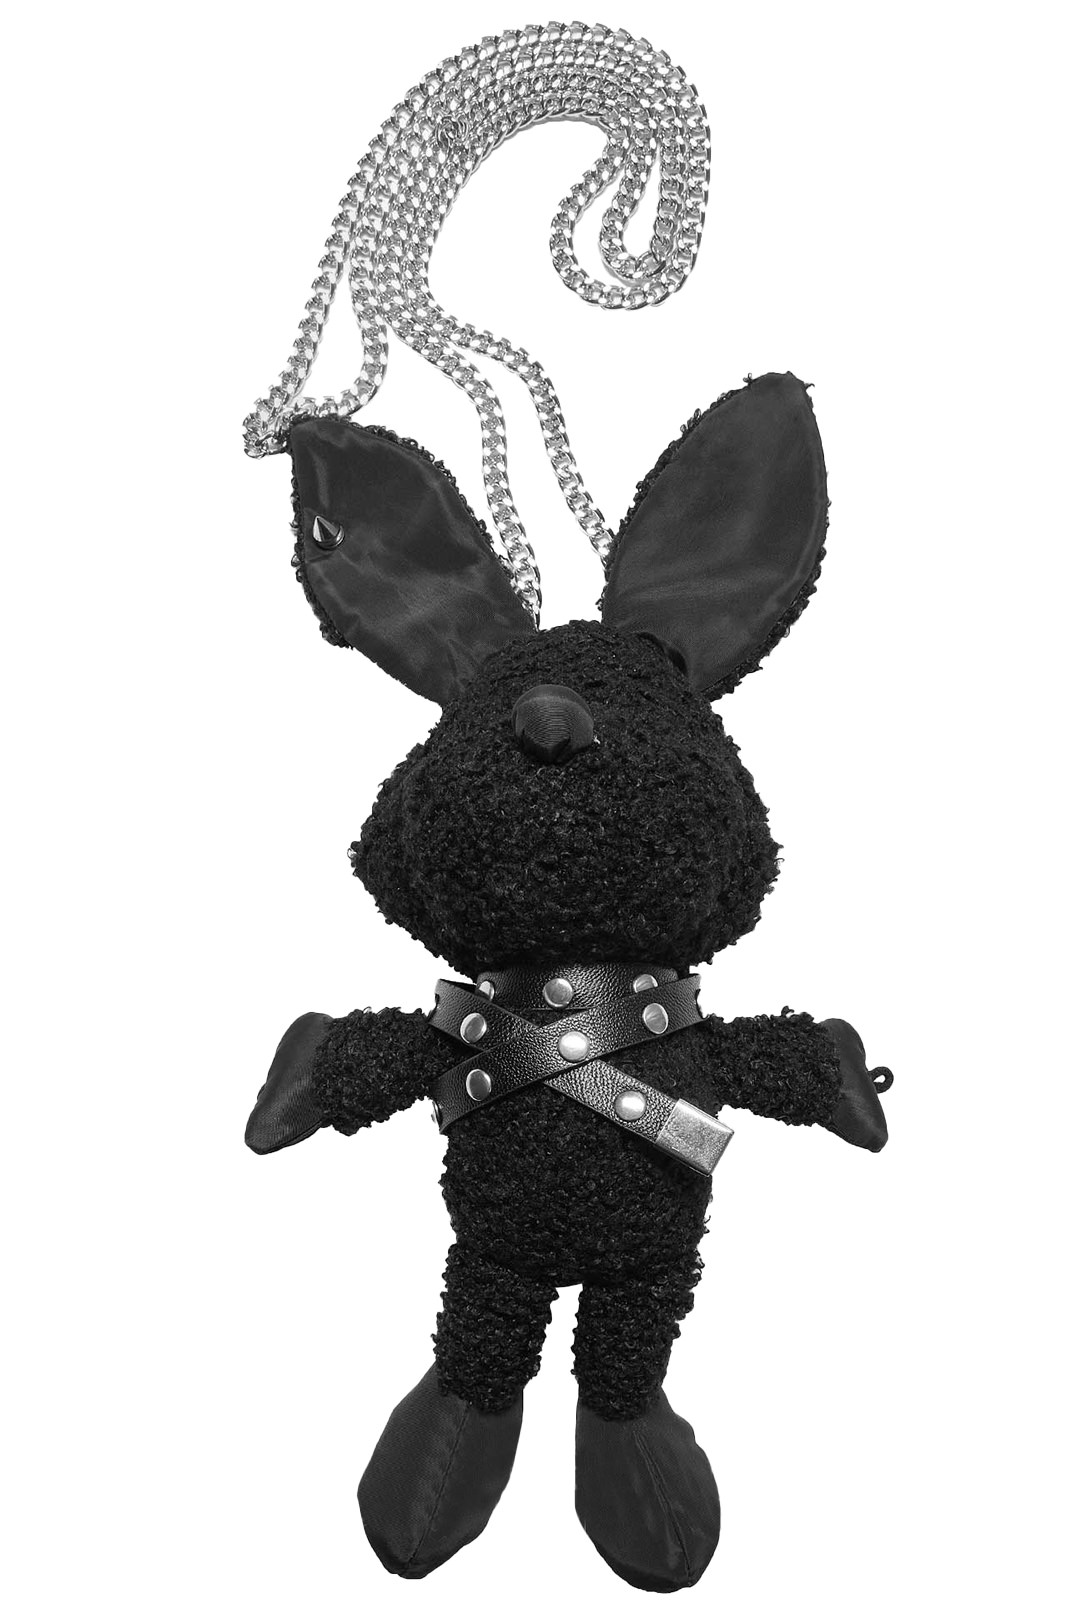 Punk rave stuffed animal bondage bunny - Wonderland 13 Store